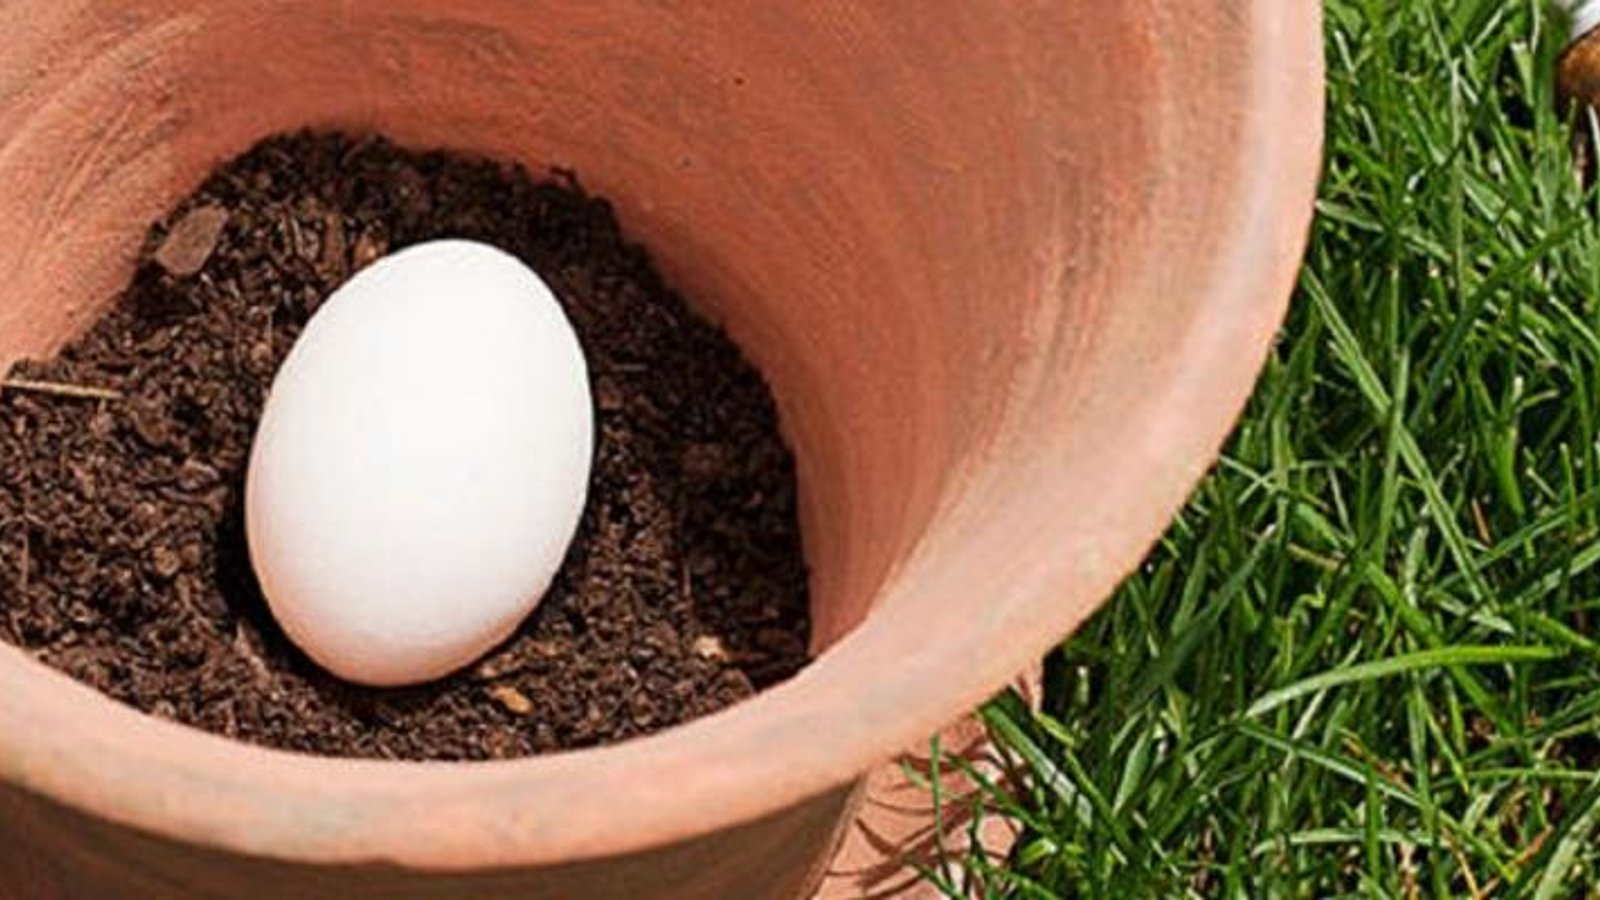 Plantez un oeuf cru dans un pot à fleurs et voici l'incroyable effet qu'il aura sur votre jardin! 